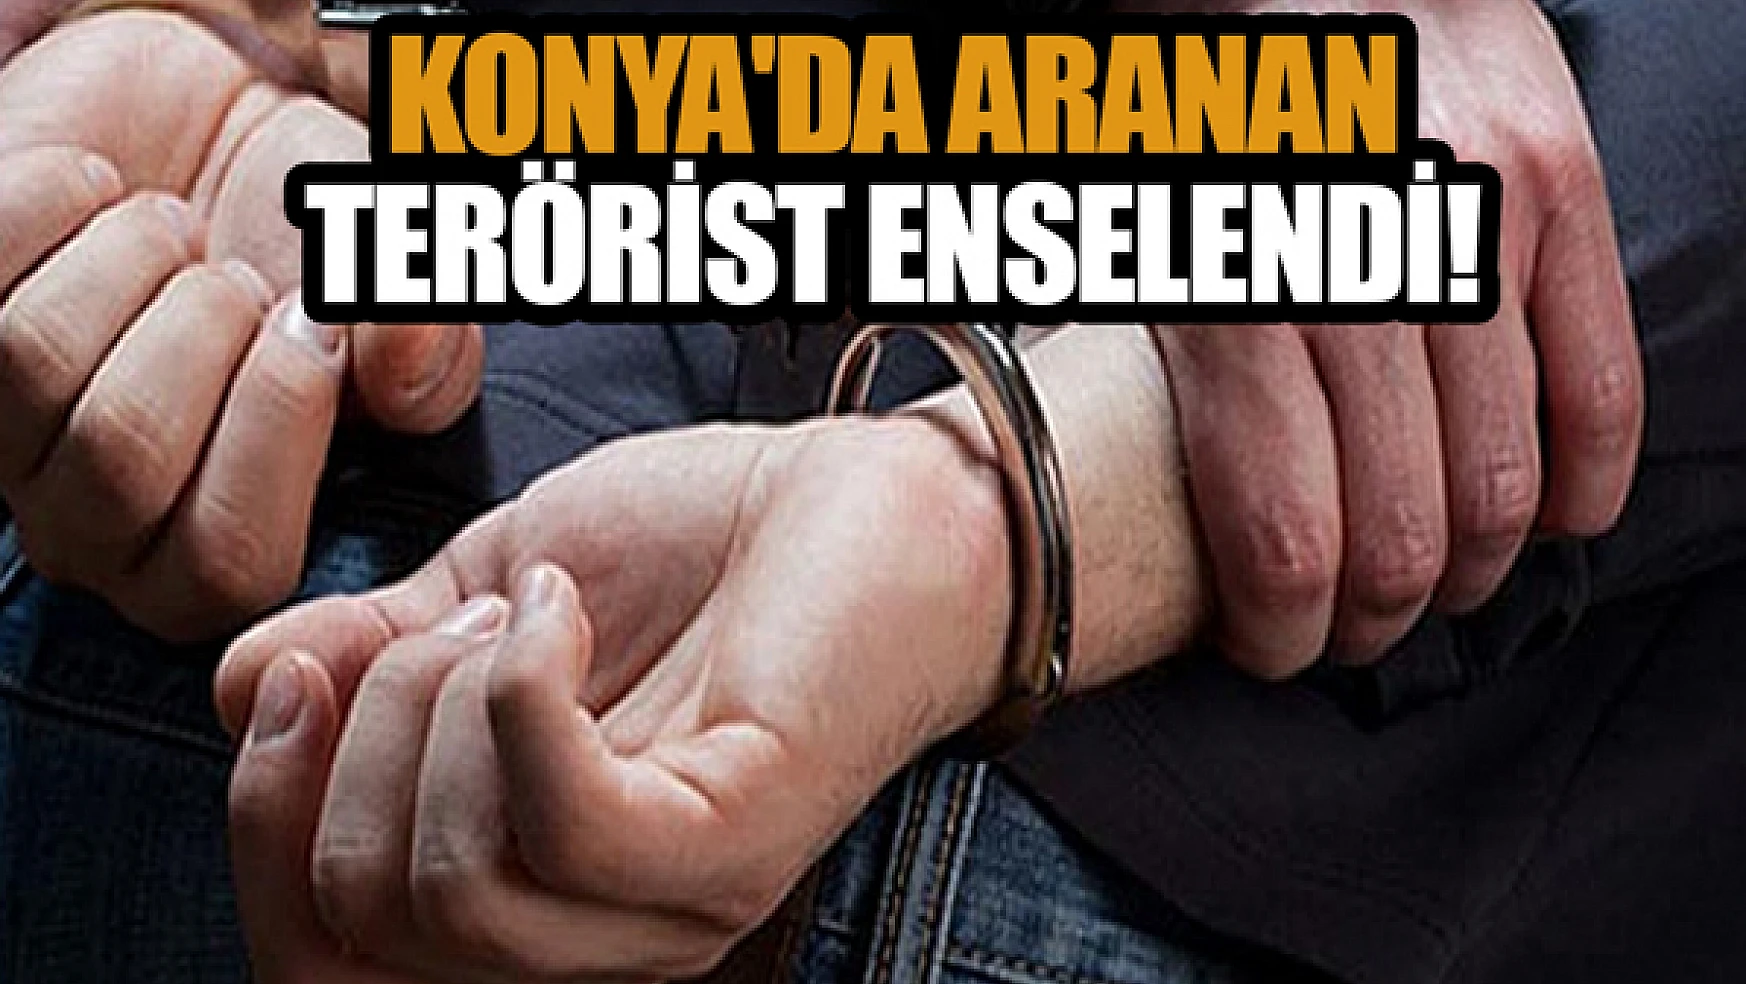 Konya'da aranan PKK/KCK hükümlüsü enselendi!